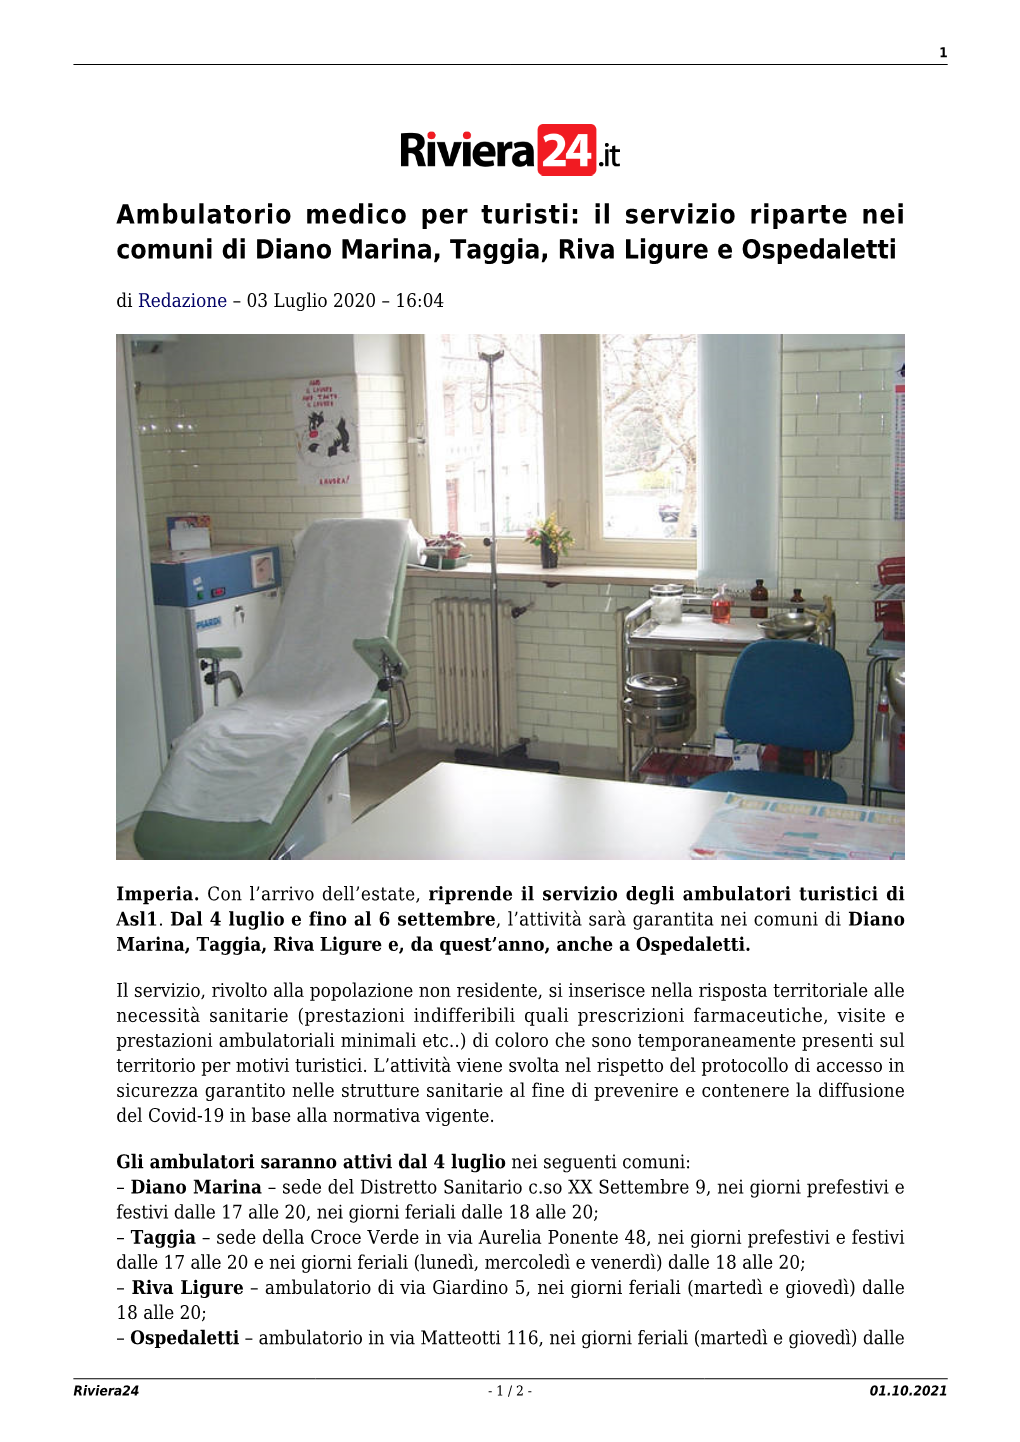 Ambulatorio Medico Per Turisti: Il Servizio Riparte Nei Comuni Di Diano Marina, Taggia, Riva Ligure E Ospedaletti